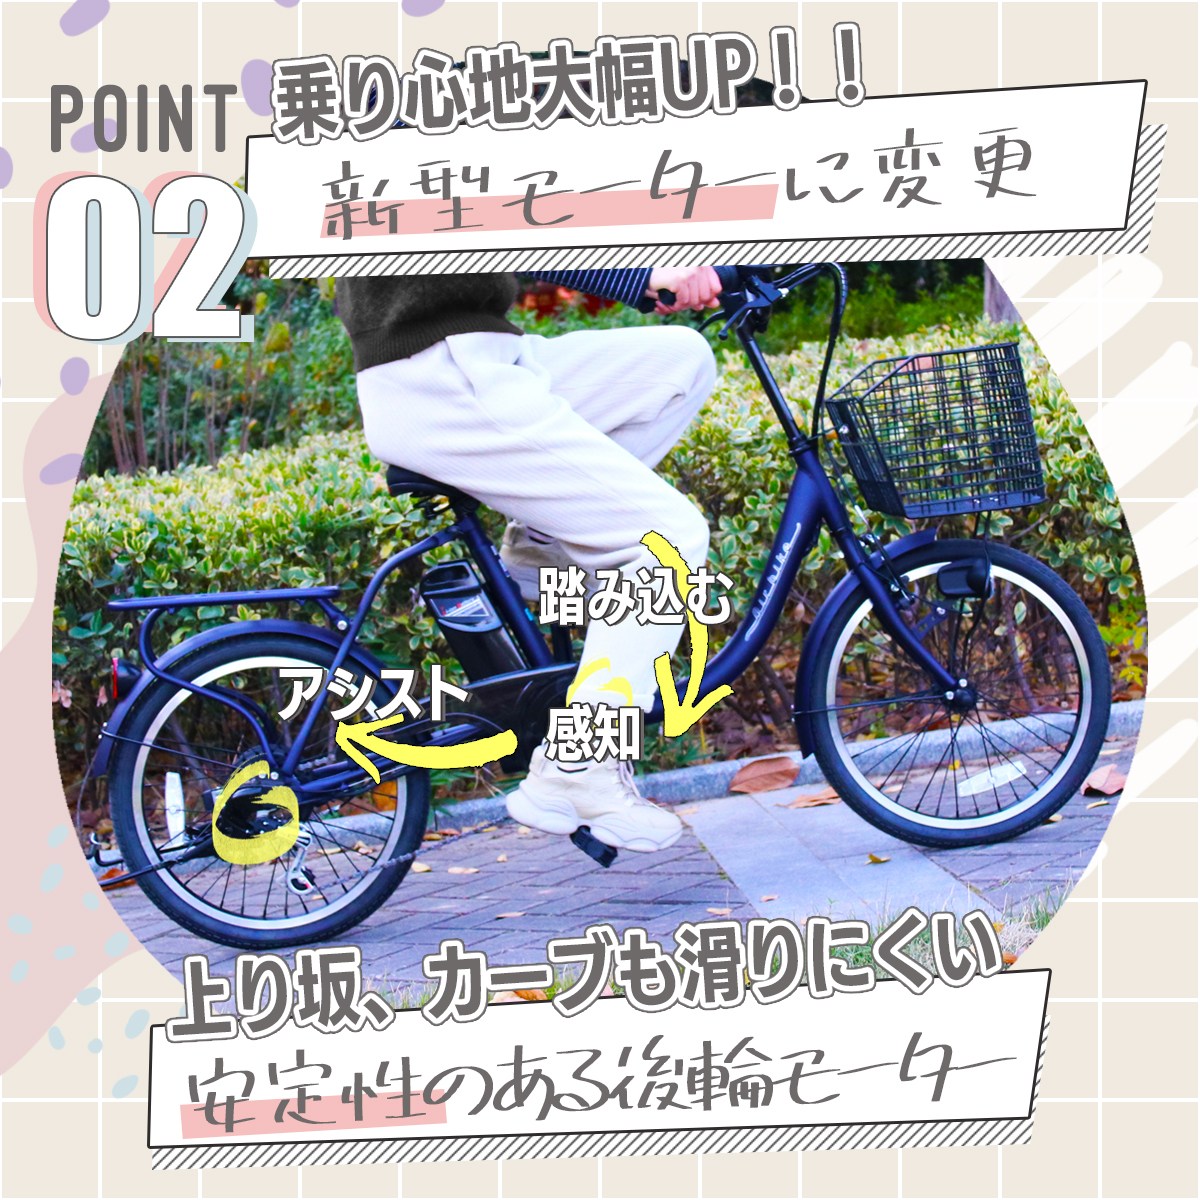 【今だけ先着30台特別価格】電動自転車 パナソ...の詳細画像3